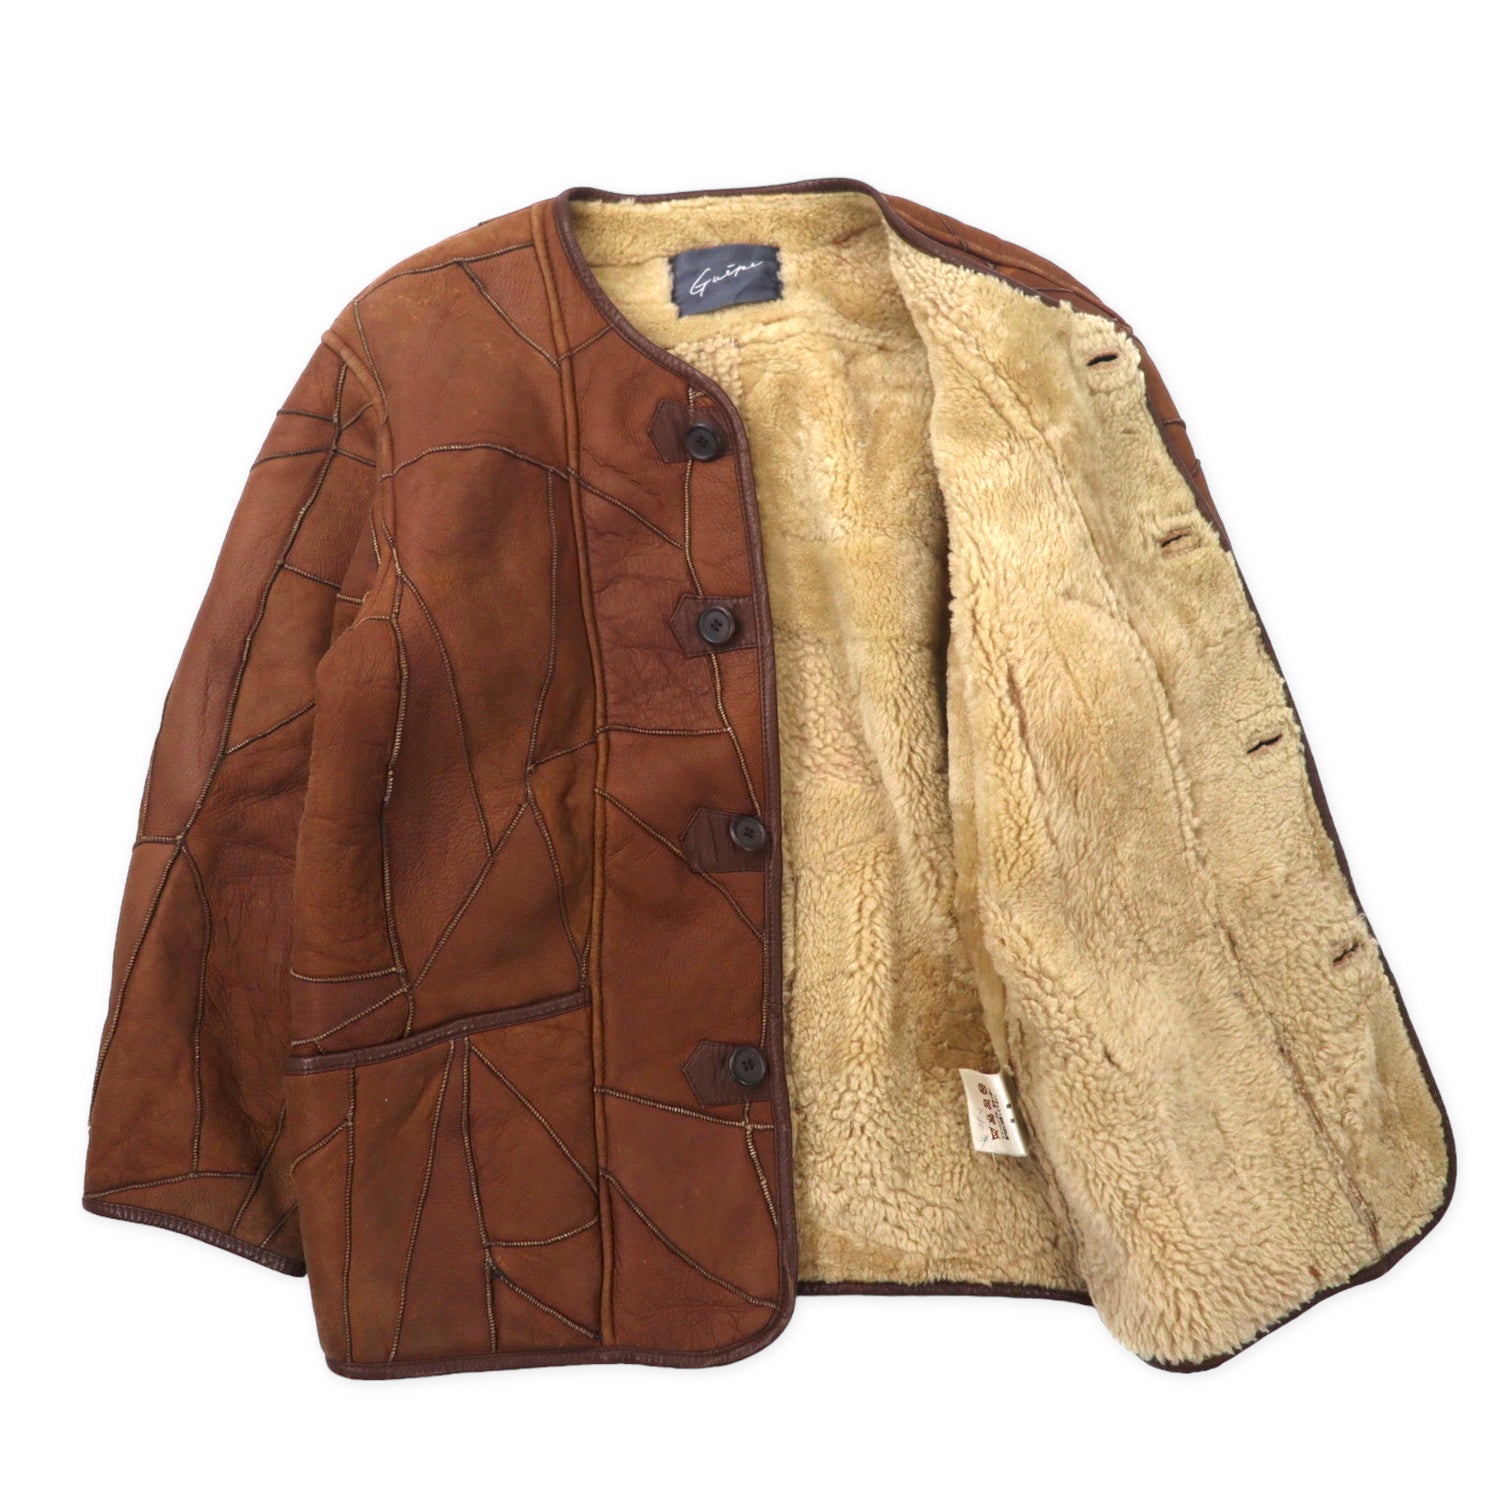 約65cm身幅90's vintage mouton leather jacket